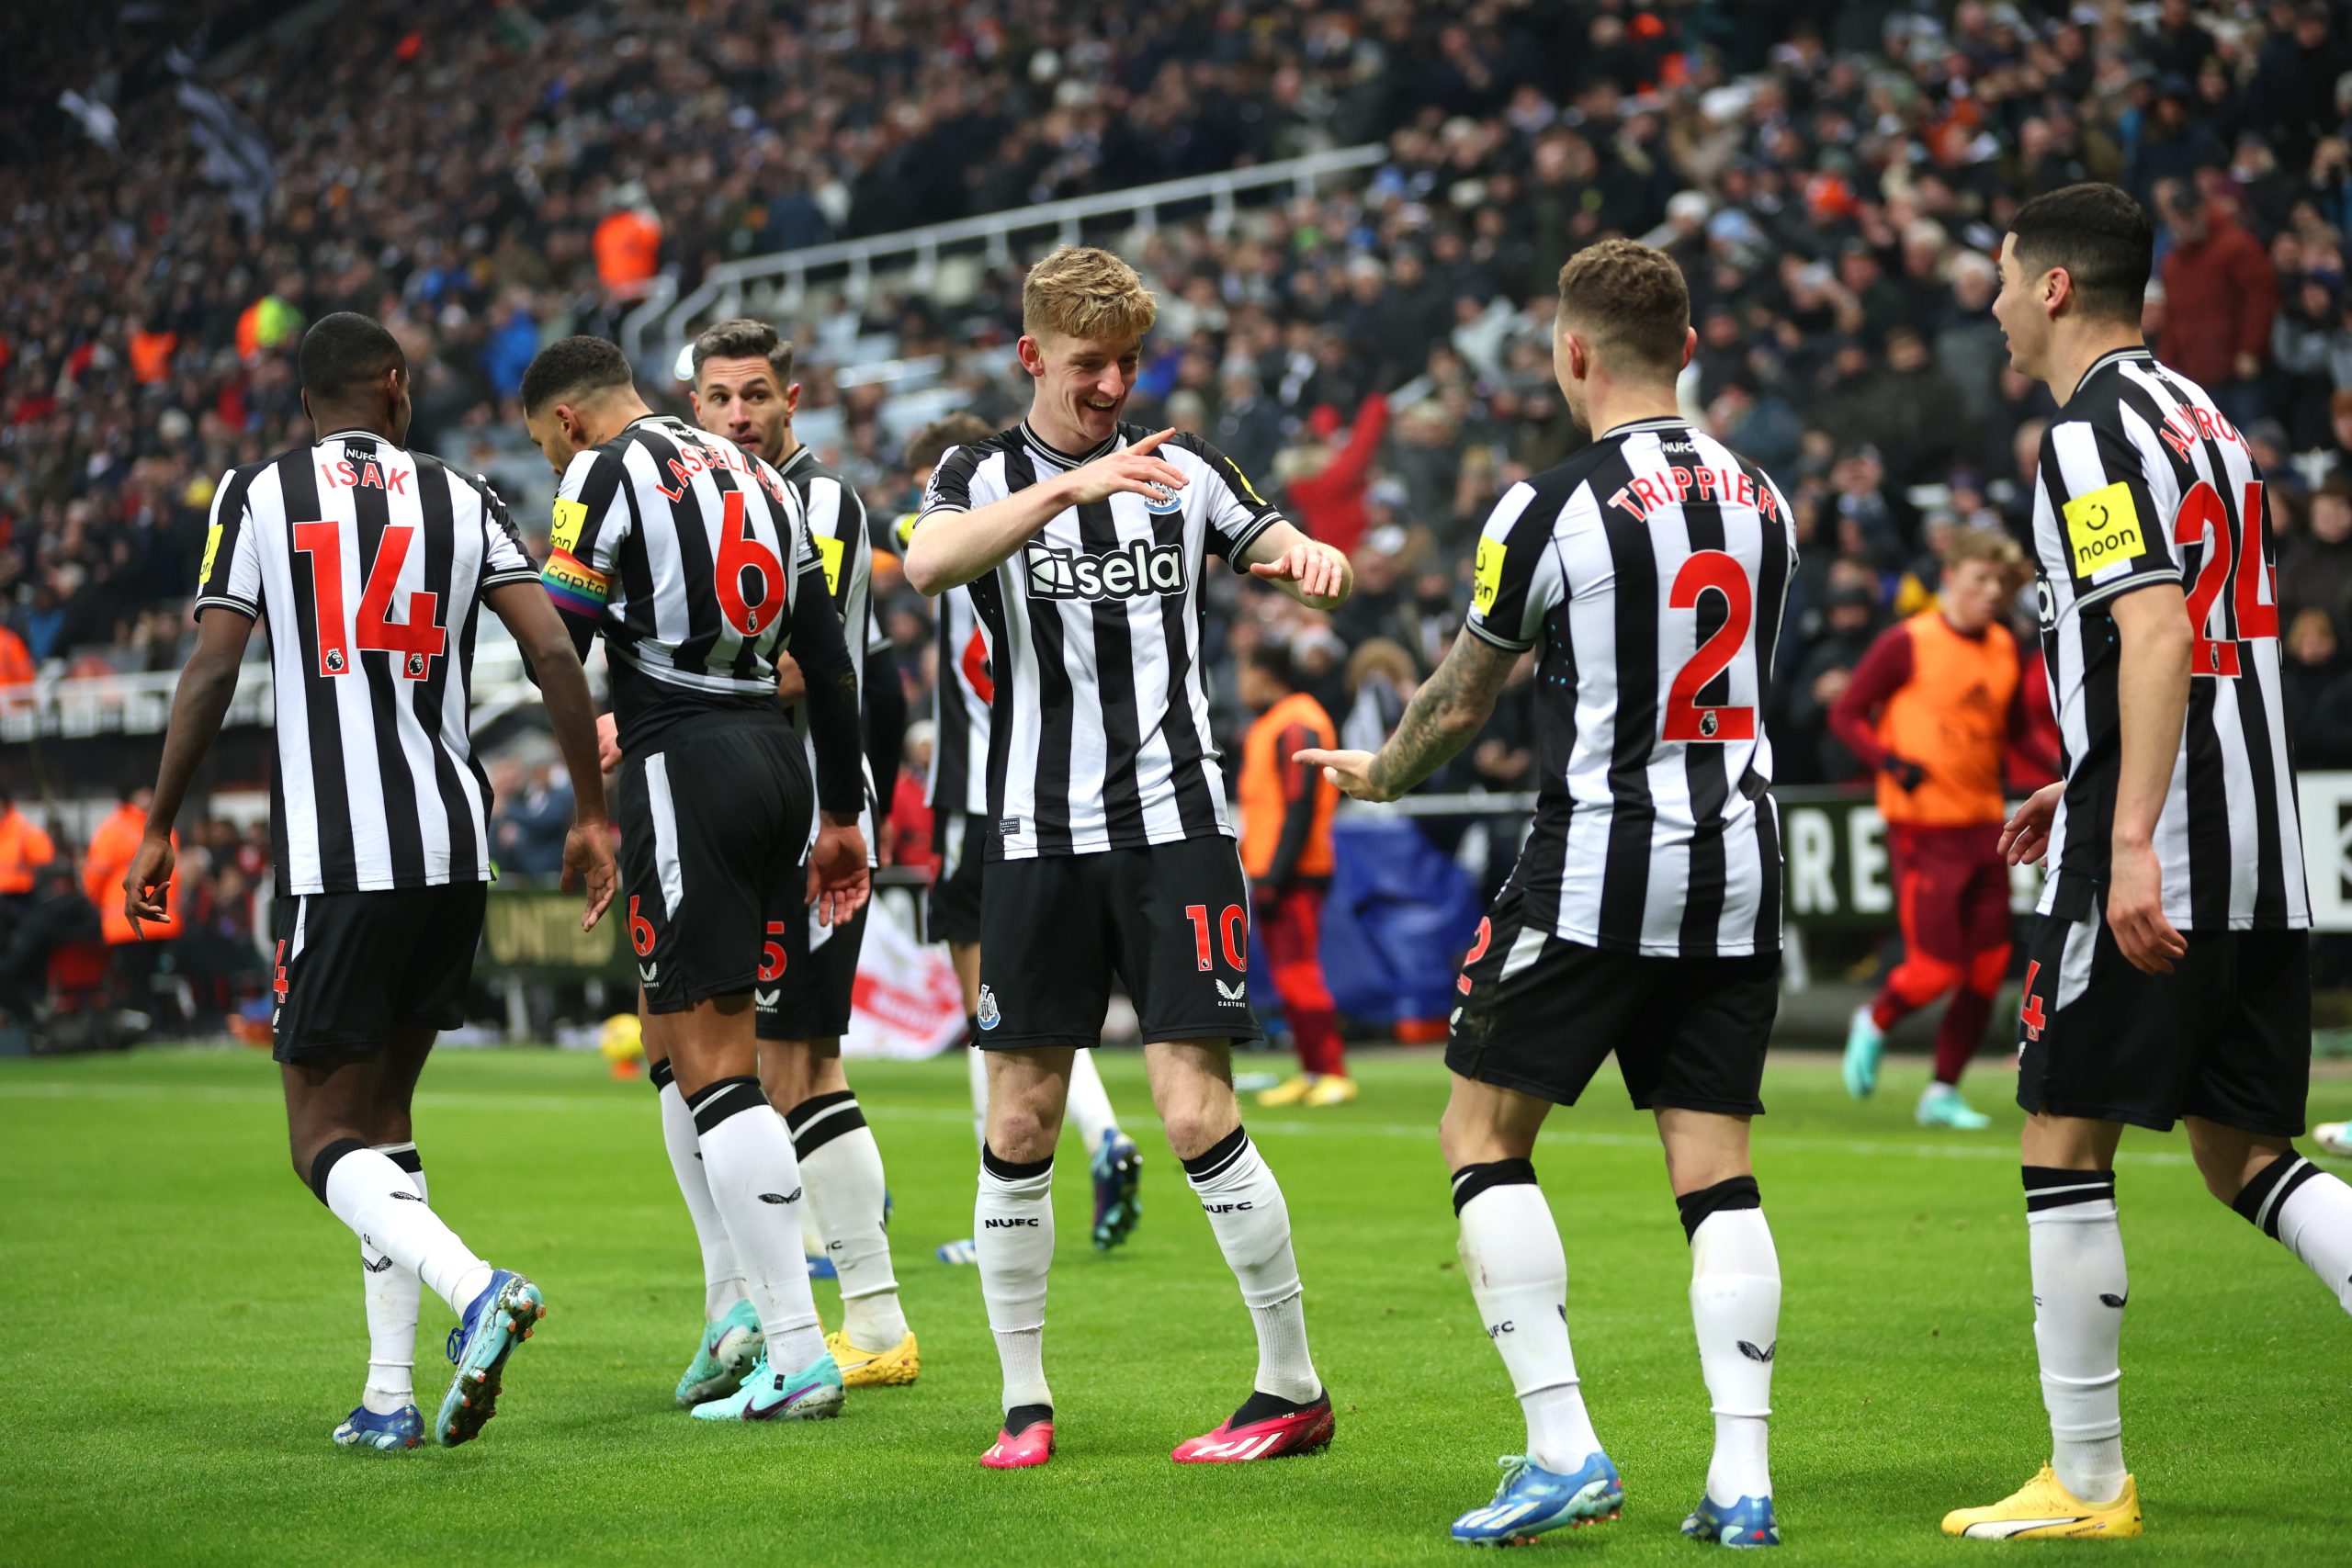 Jogadores celebram o gol do Newcastle (Foto: Clive Brunskill/Getty Images)